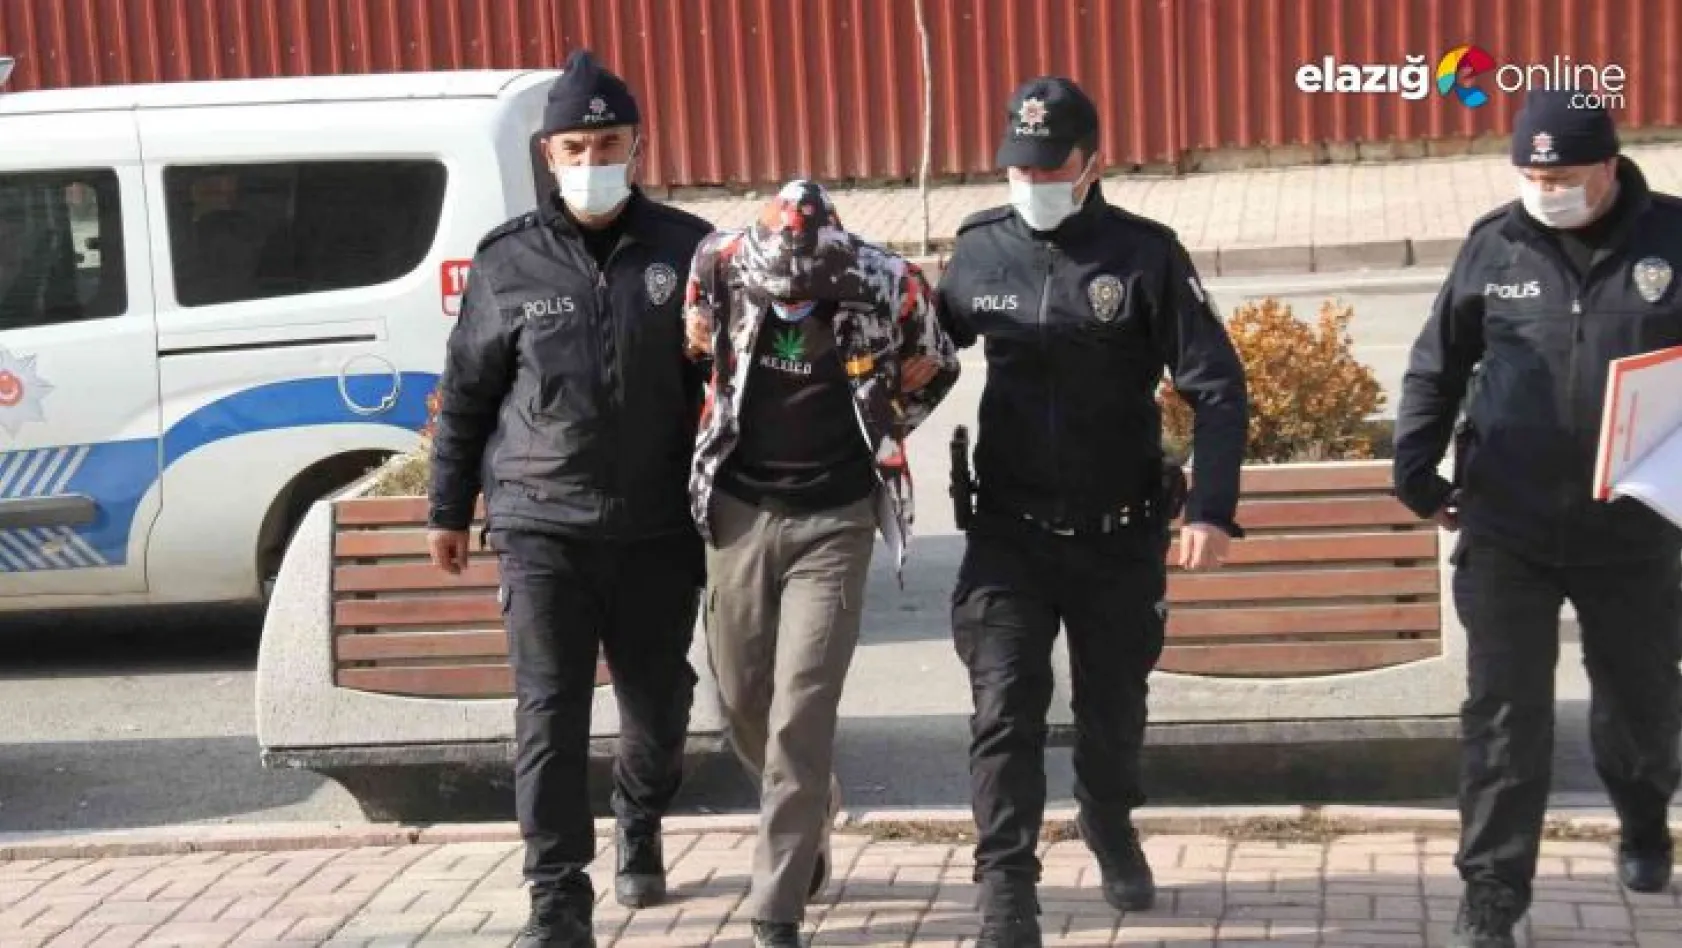 Elazığ polisi kablo hırsızlarını kıskıvrak yakaladı